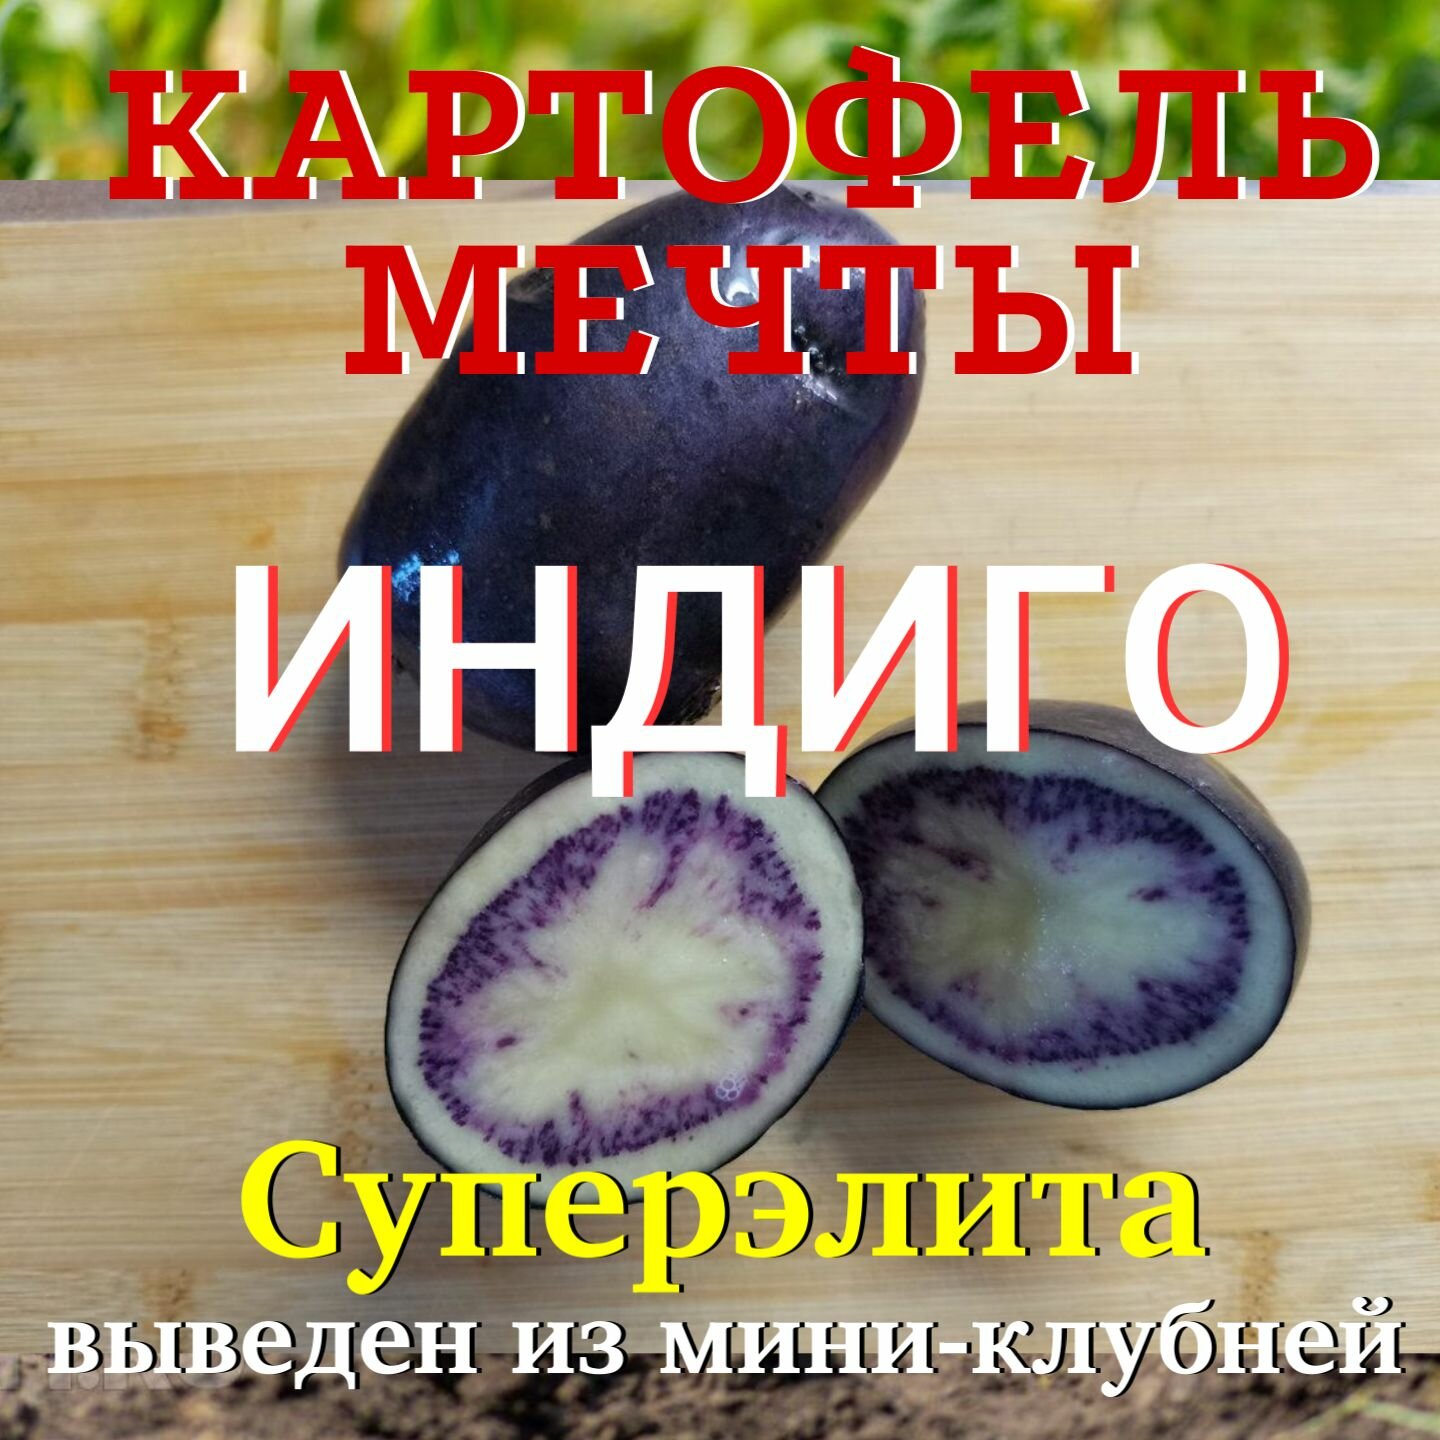 Картофель семенной индиго клубни суперэлита 2 кг